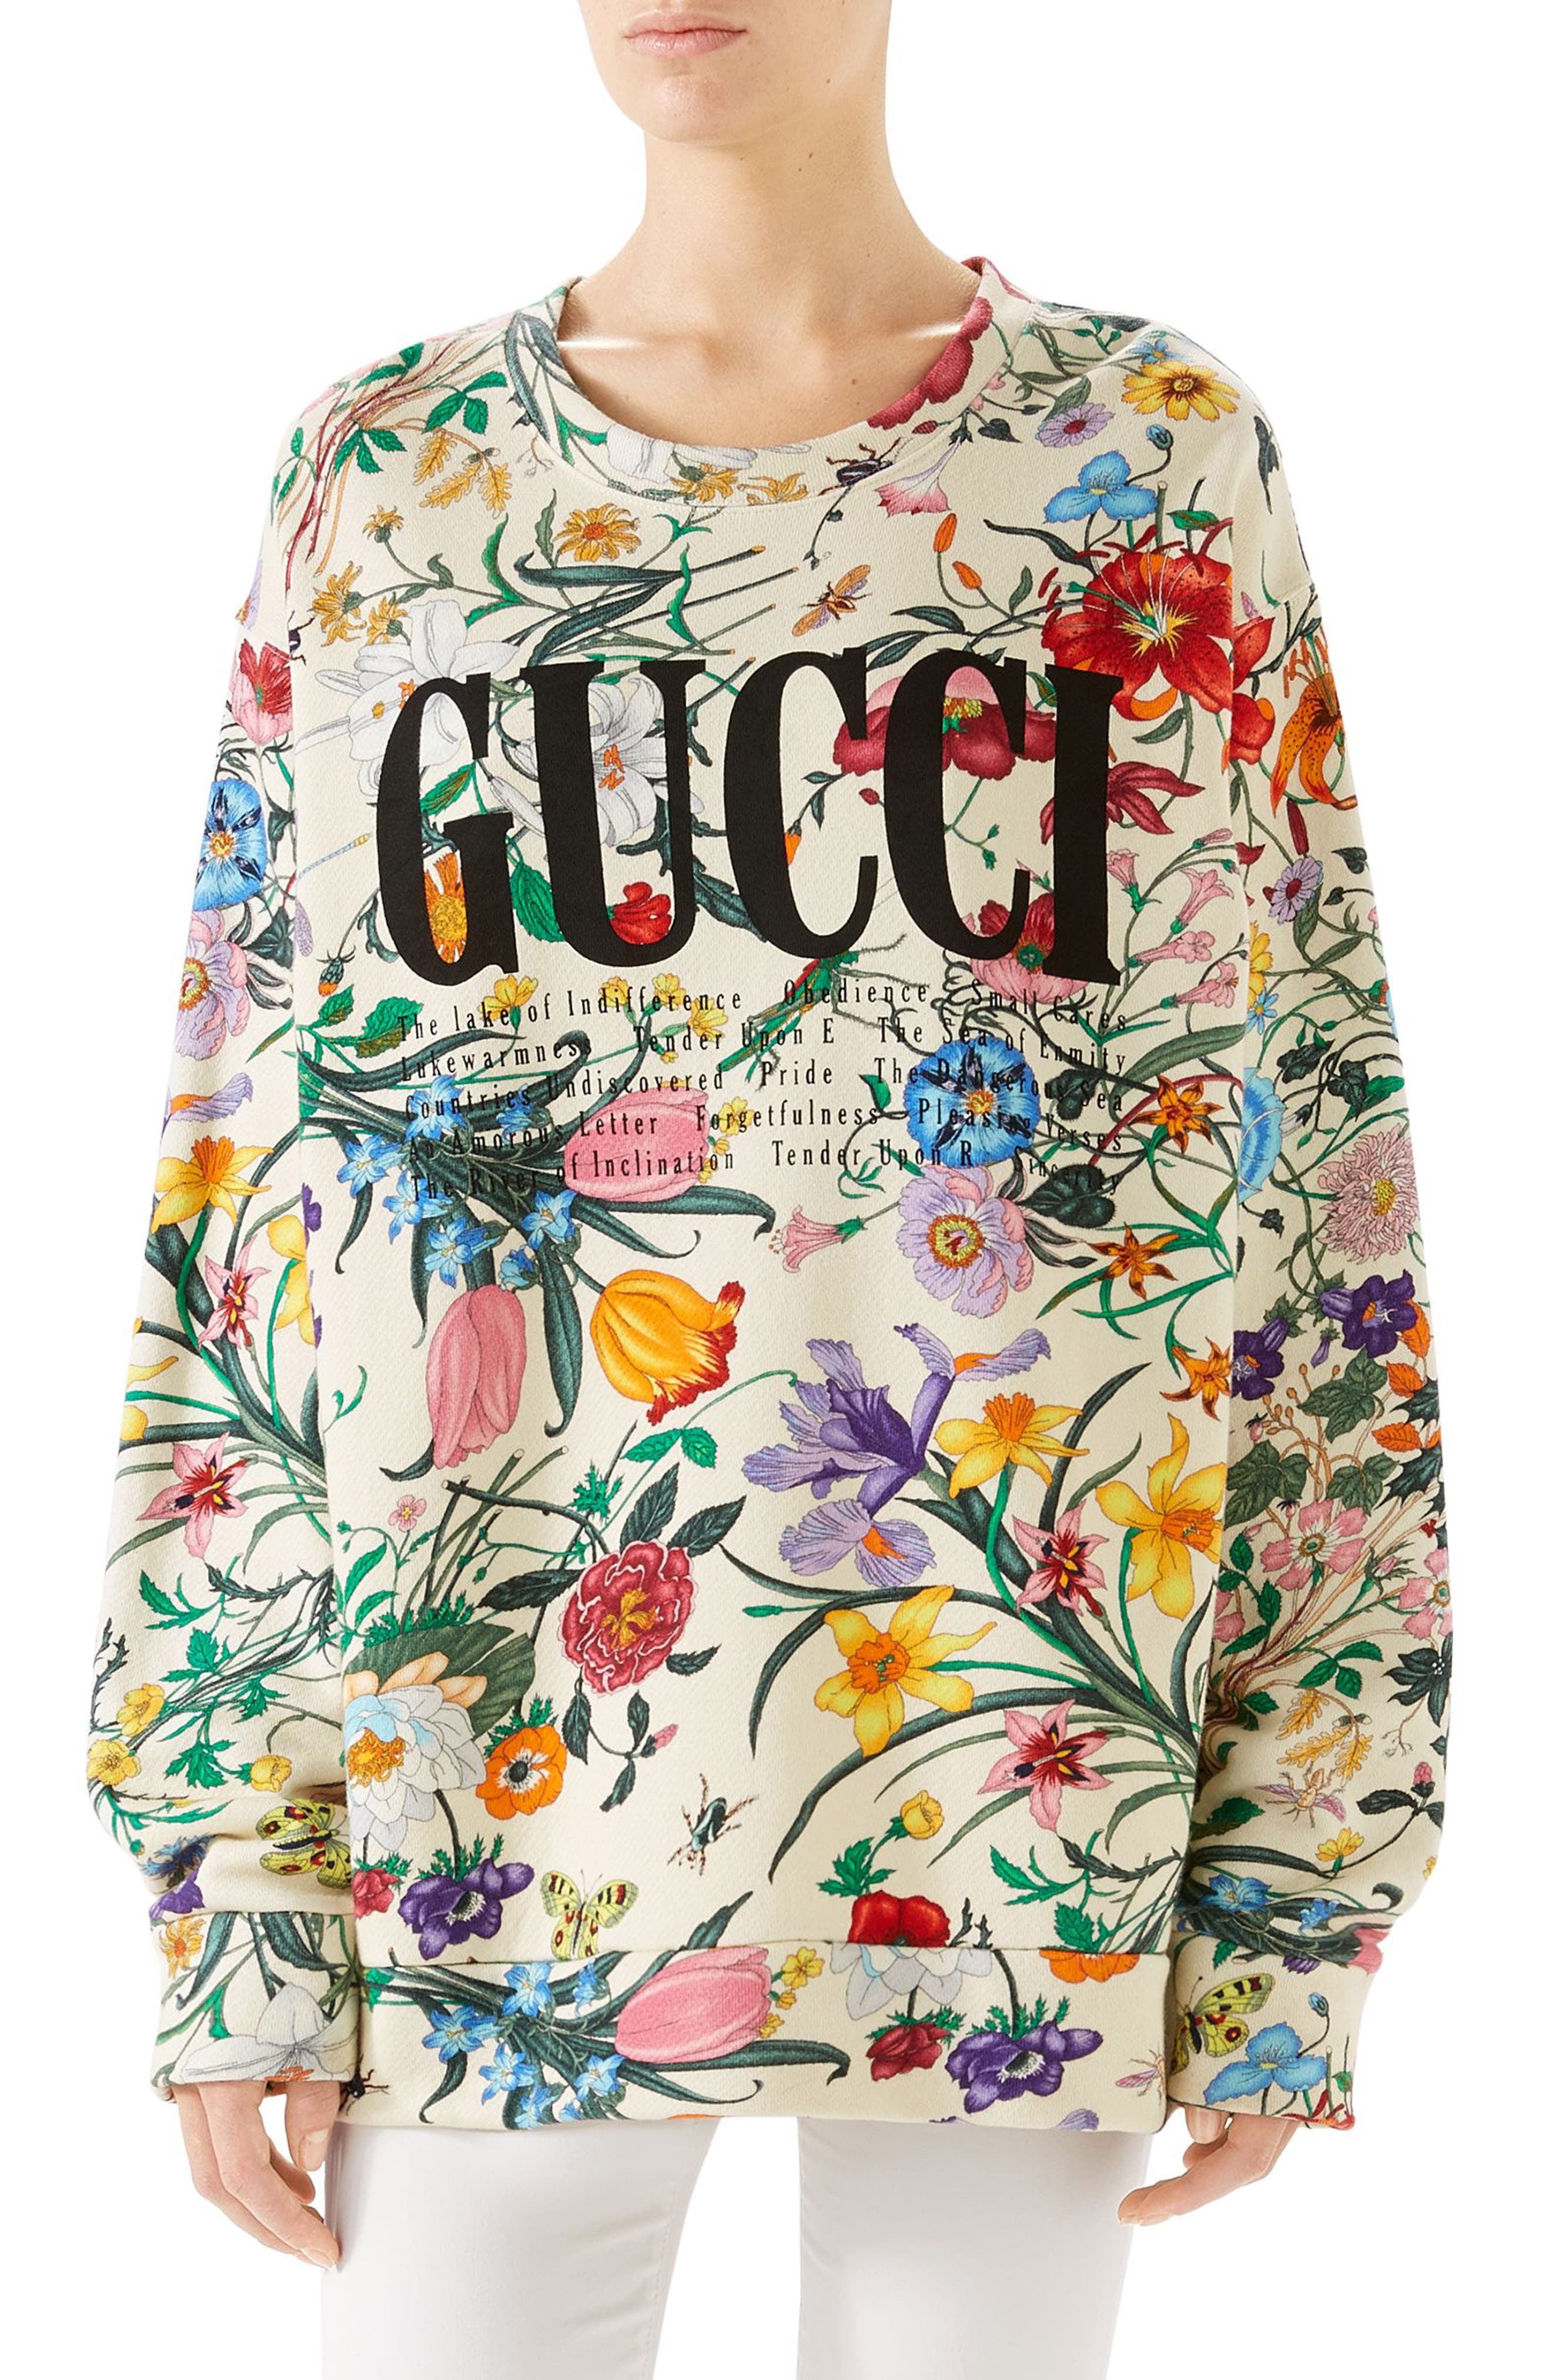 gucci floral hoodie